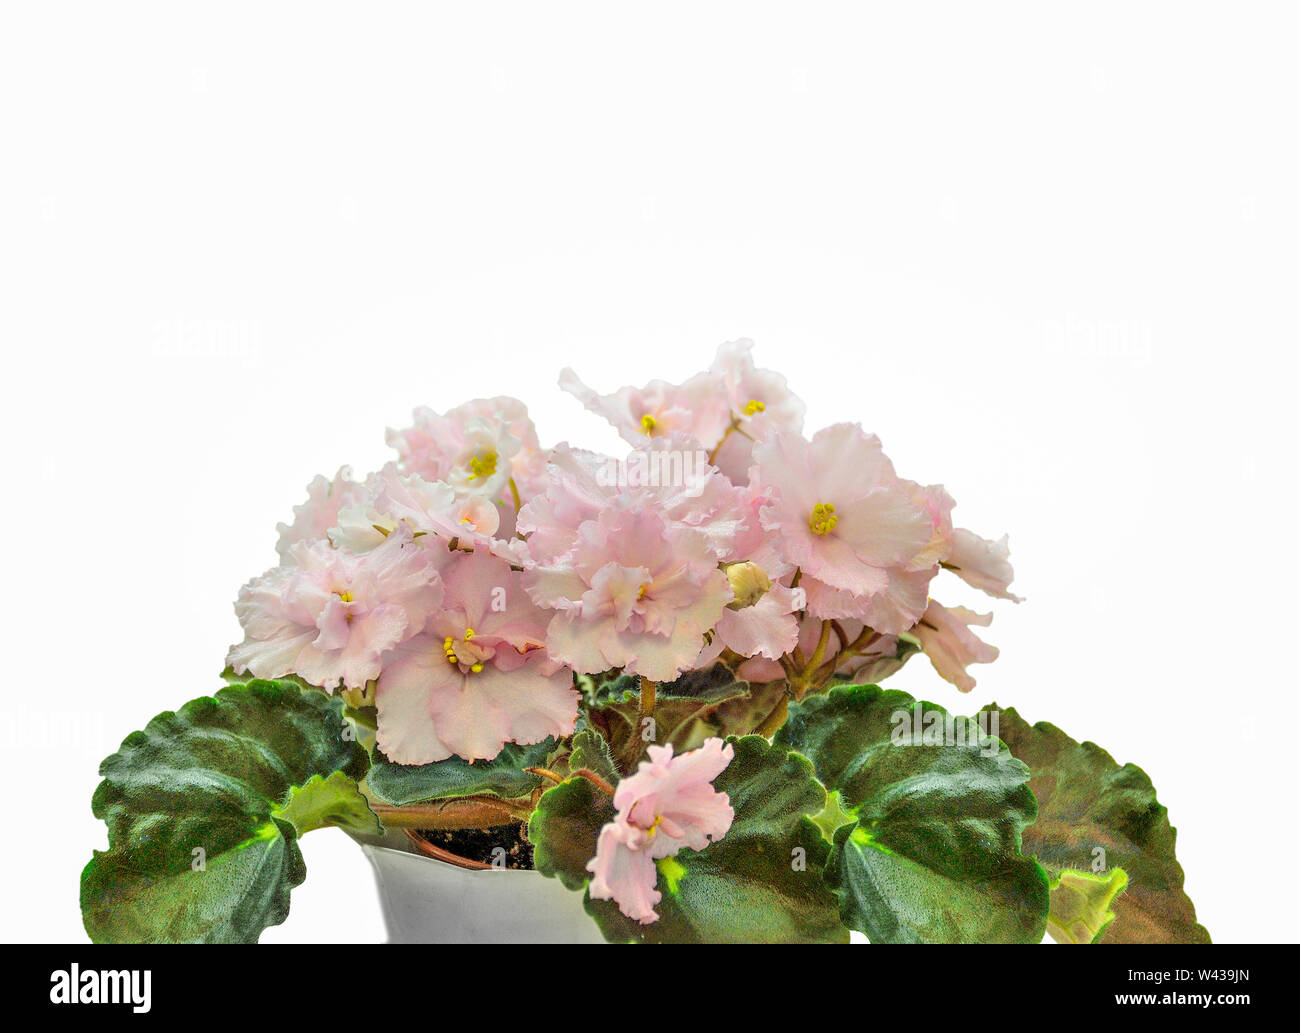 Schöne blühende Pflanze von Senpolia oder Uzumbar Violett (Saintpaulien) mit zarten Rosa terry Blütenblätter im Topf. Dekorative Kübelpflanzen Zimmerpflanze Nahaufnahme o Stockfoto